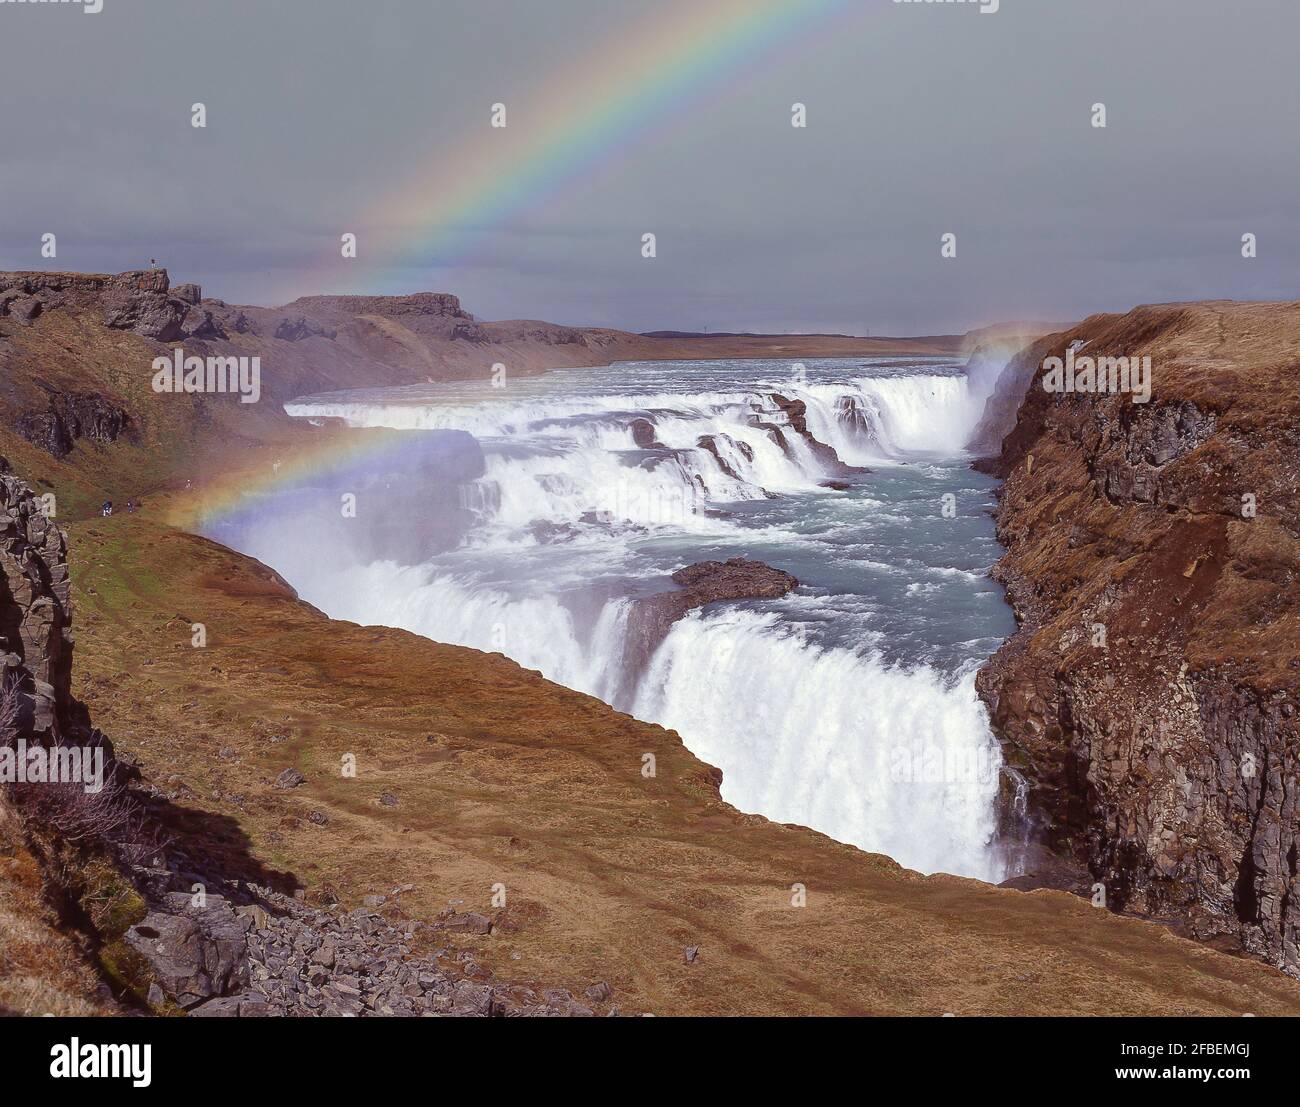 Chute d'eau de Gullfoss, Canyon de Hvítá, région du Sud-Ouest, République d'Islande Banque D'Images